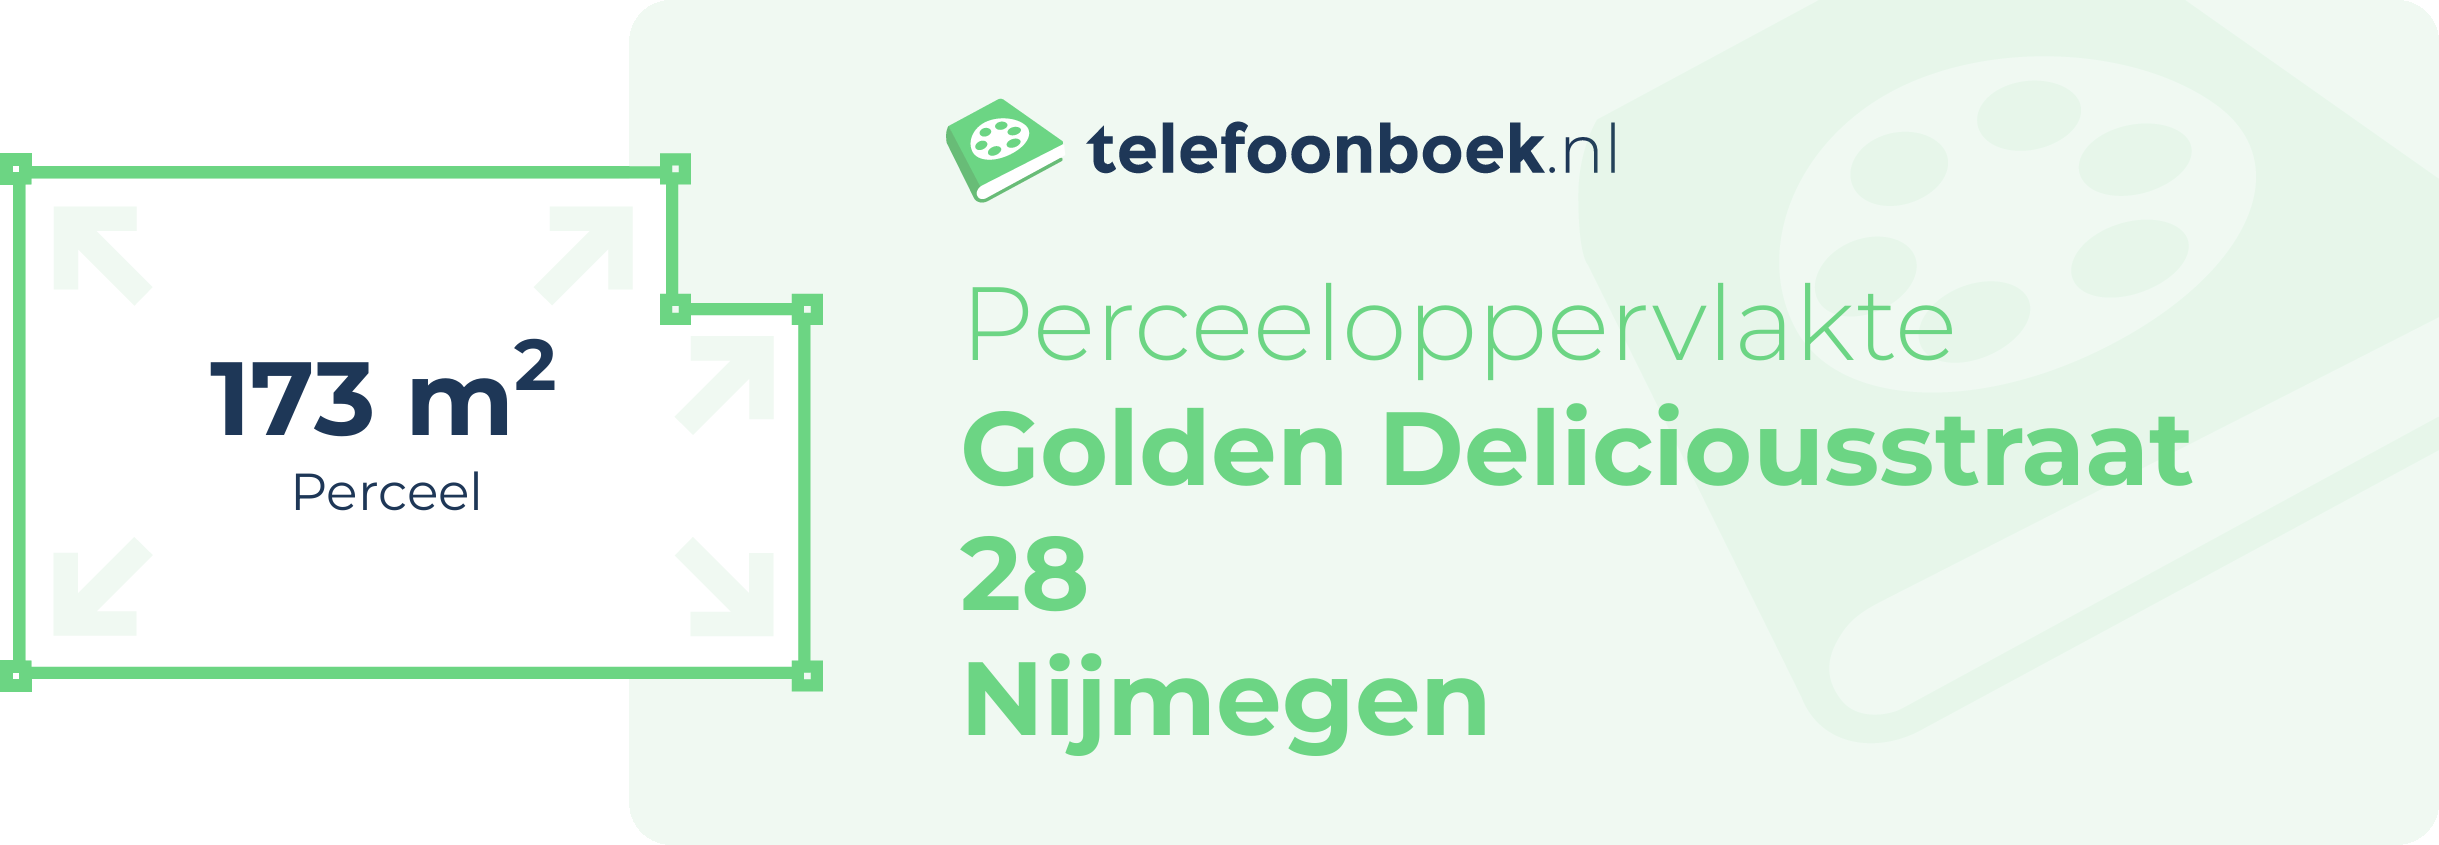 Perceeloppervlakte Golden Deliciousstraat 28 Nijmegen